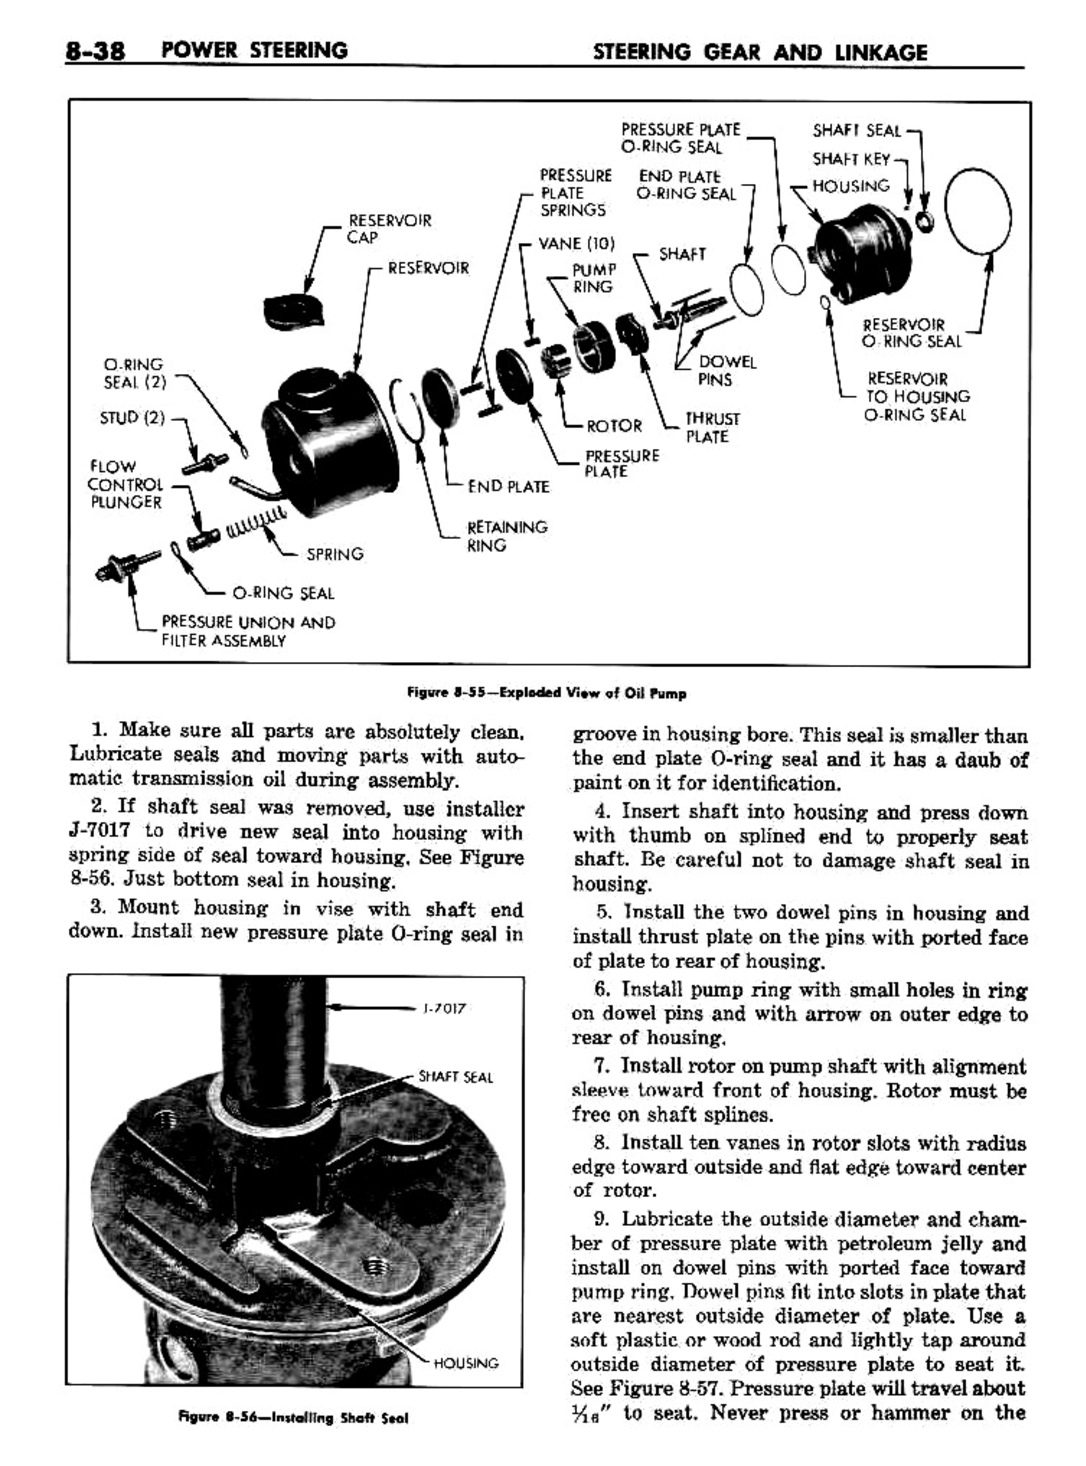 n_09 1960 Buick Shop Manual - Steering-038-038.jpg